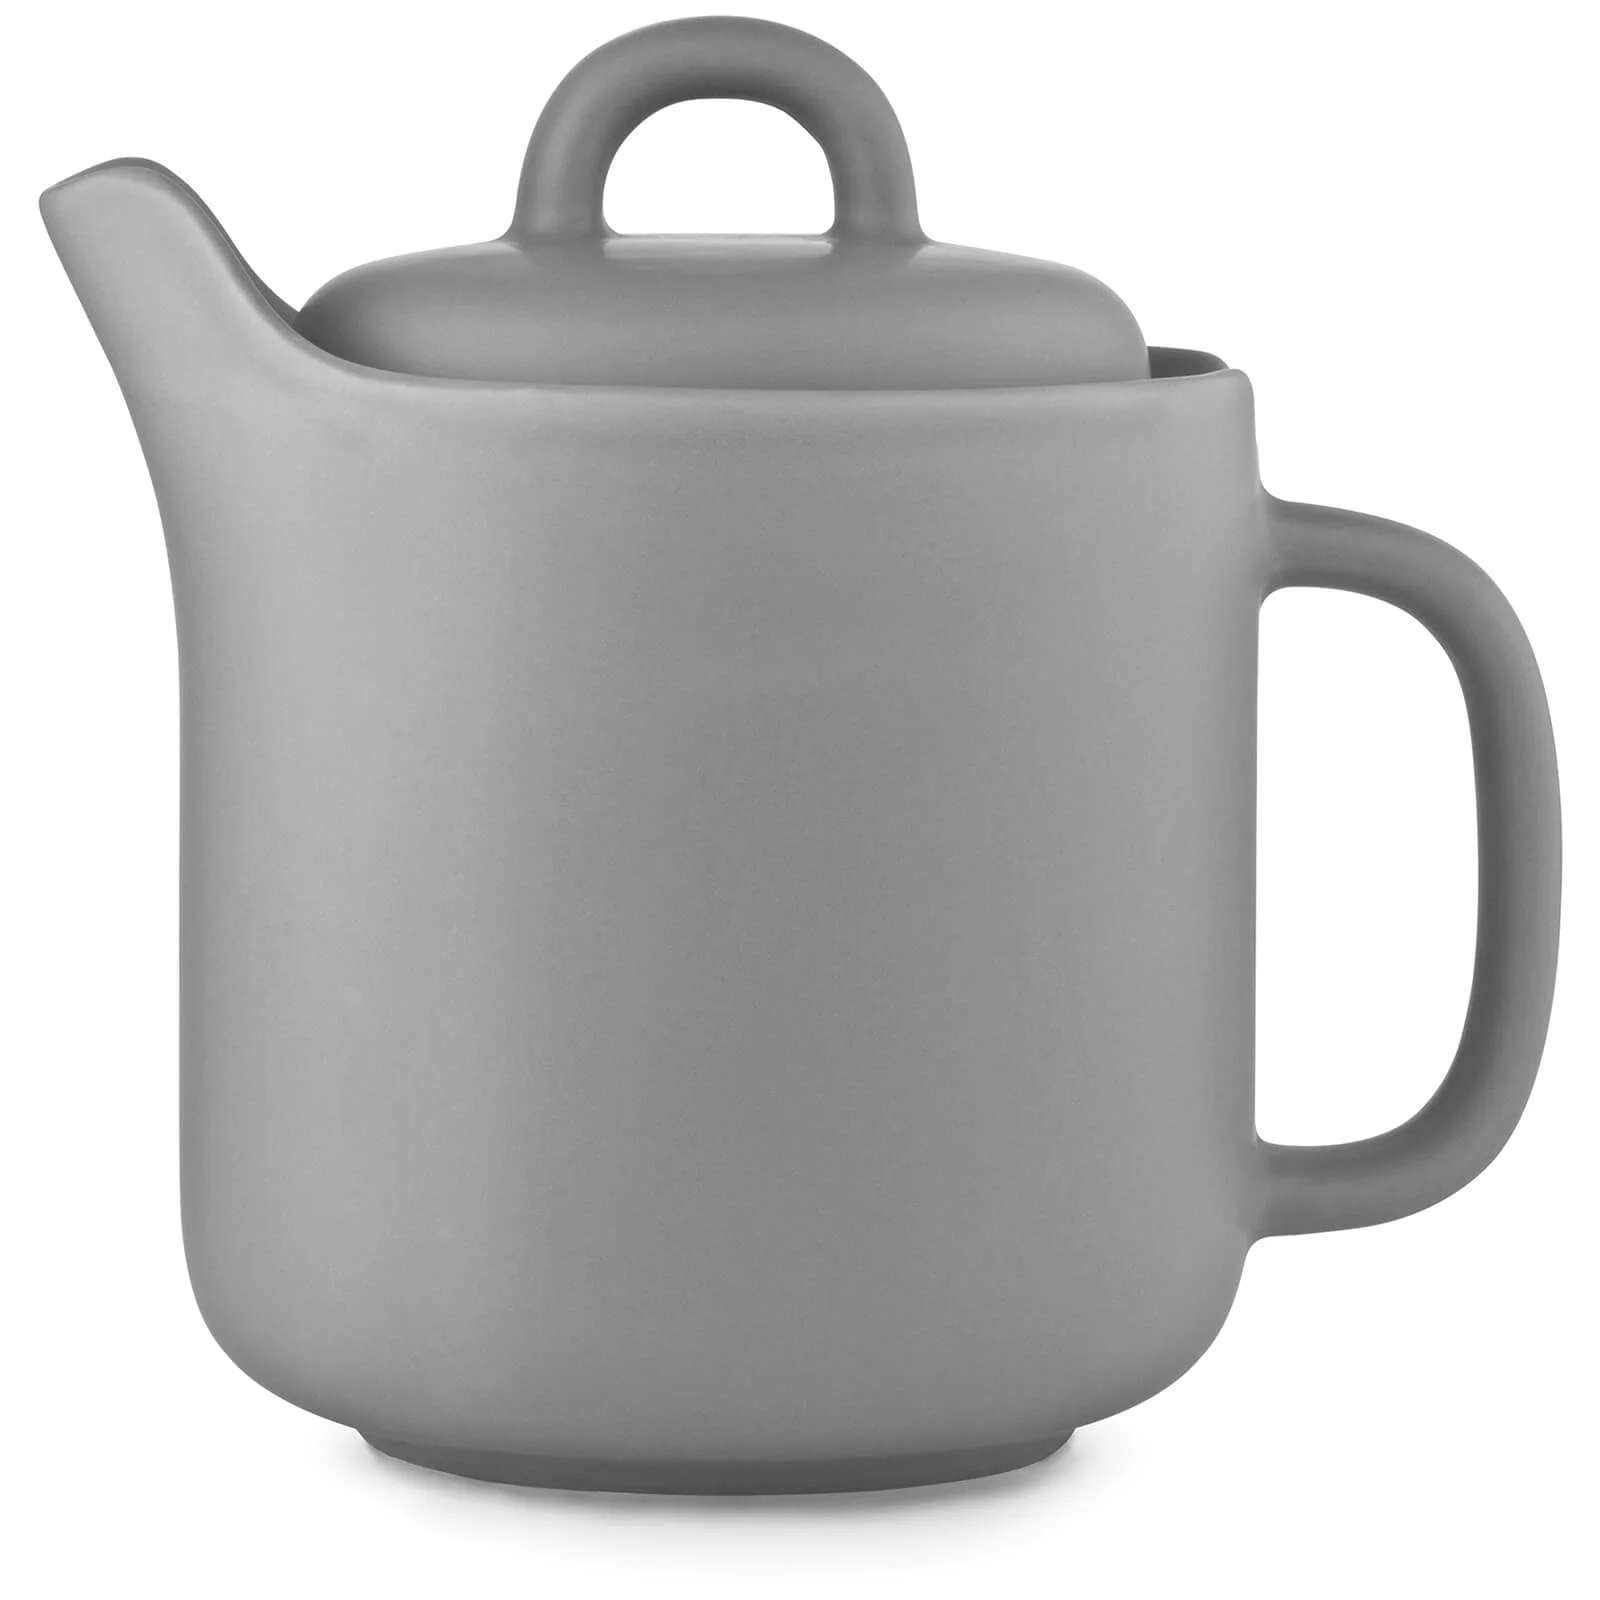 Normann Copenhagen Bliss Teapot - Grey Image 1